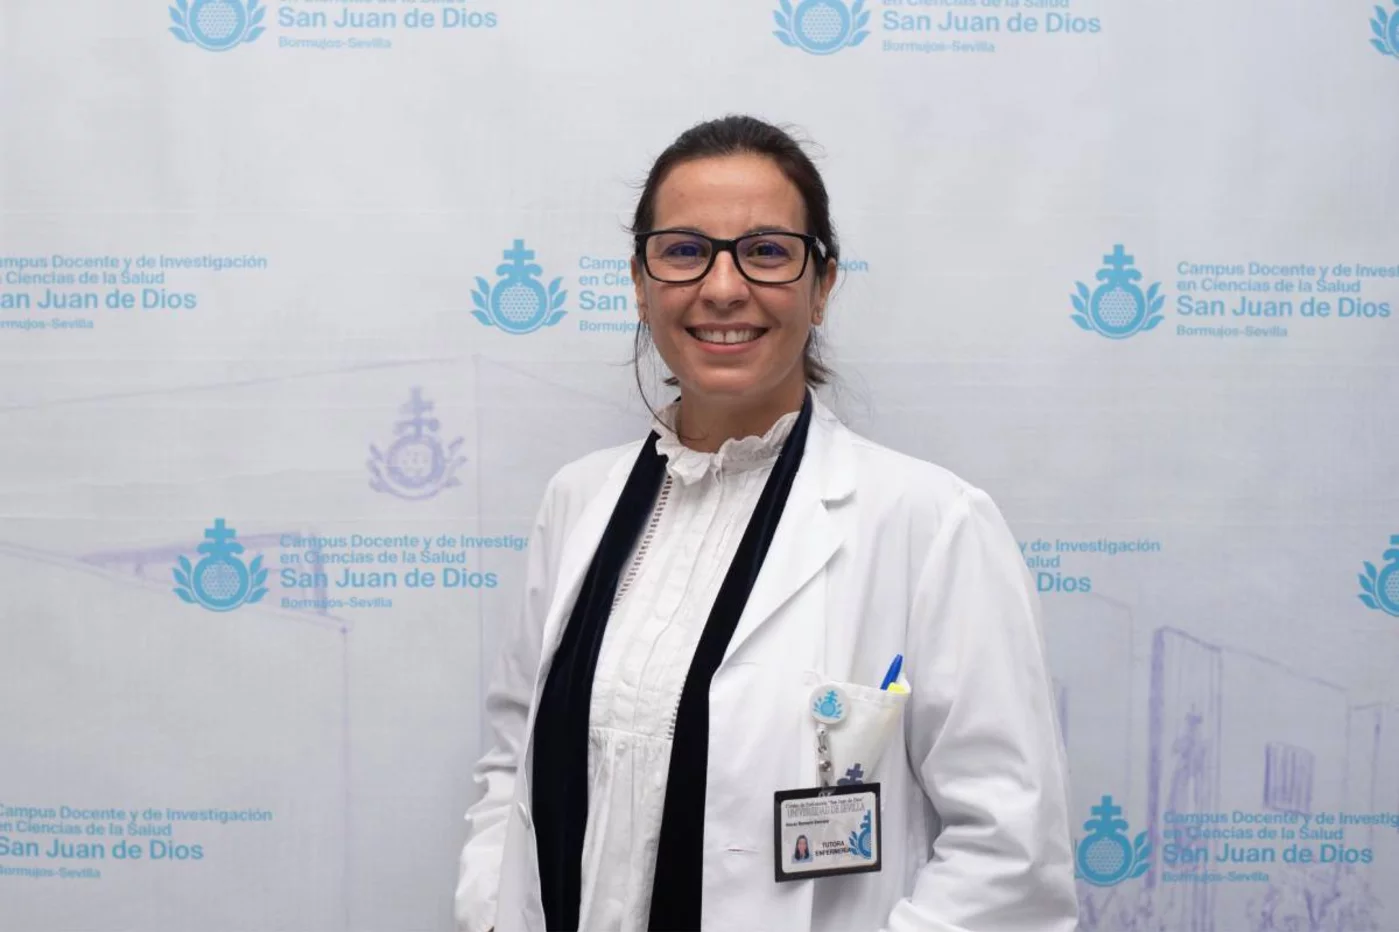 Rocío Romero Serrano, enfermera, doctora por la Universidad de Sevilla en el área de enfermería (PhD. RN) y profesora titular en el Centro Universitario de Enfermería San Juan de Dios. Adscrito a la Universidad de Sevilla.